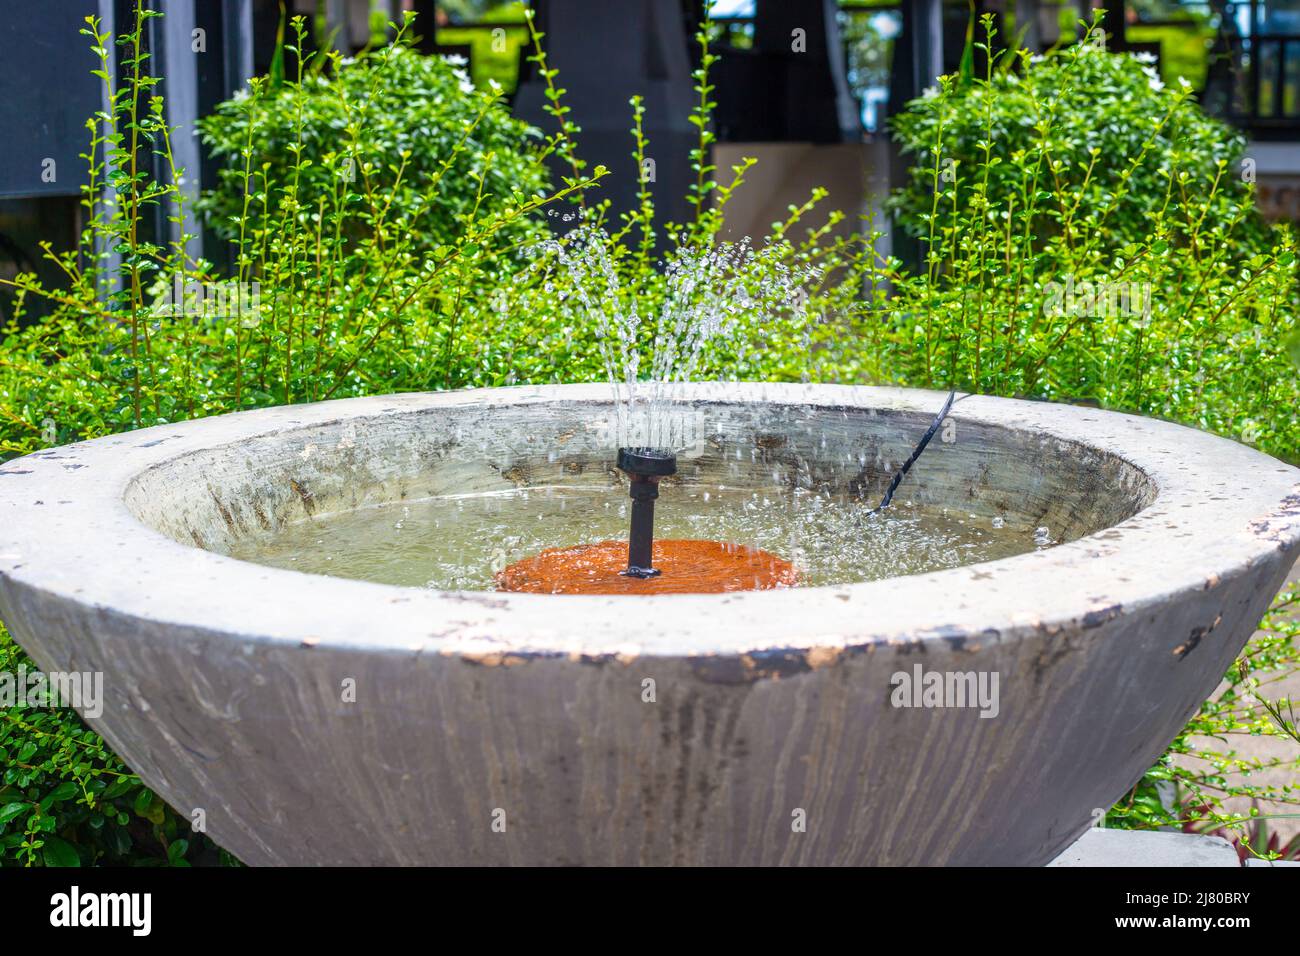 A small fountain in a concrete bowl in a tropical garden. Garden design and decor. Stock Photo